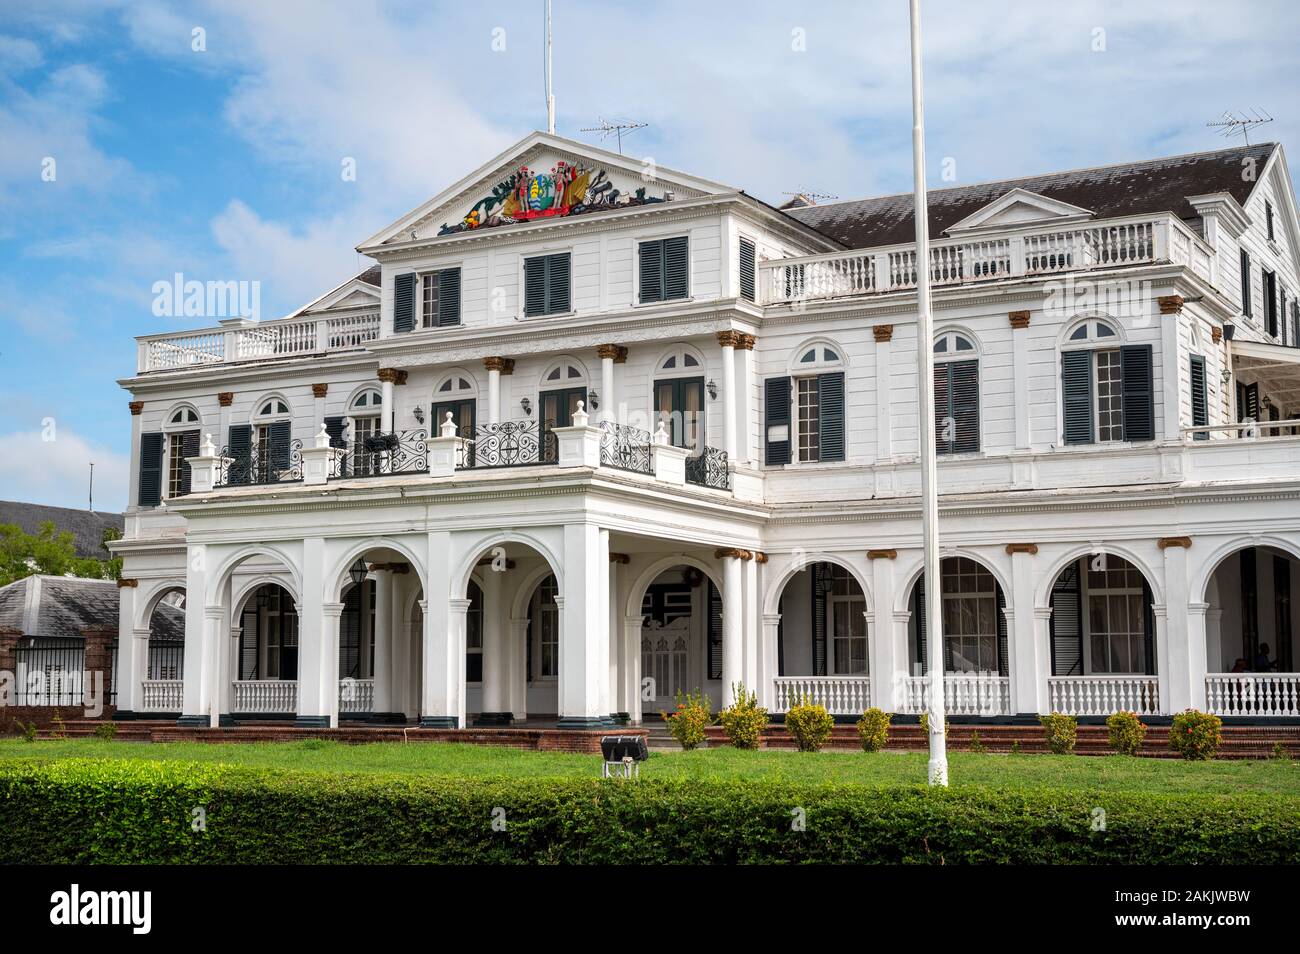 Palacio Presidencial de Suriname en Onafhankelijkheidsplein en Paramaribo, capital de la nación más pequeña de Sudamérica Foto de stock